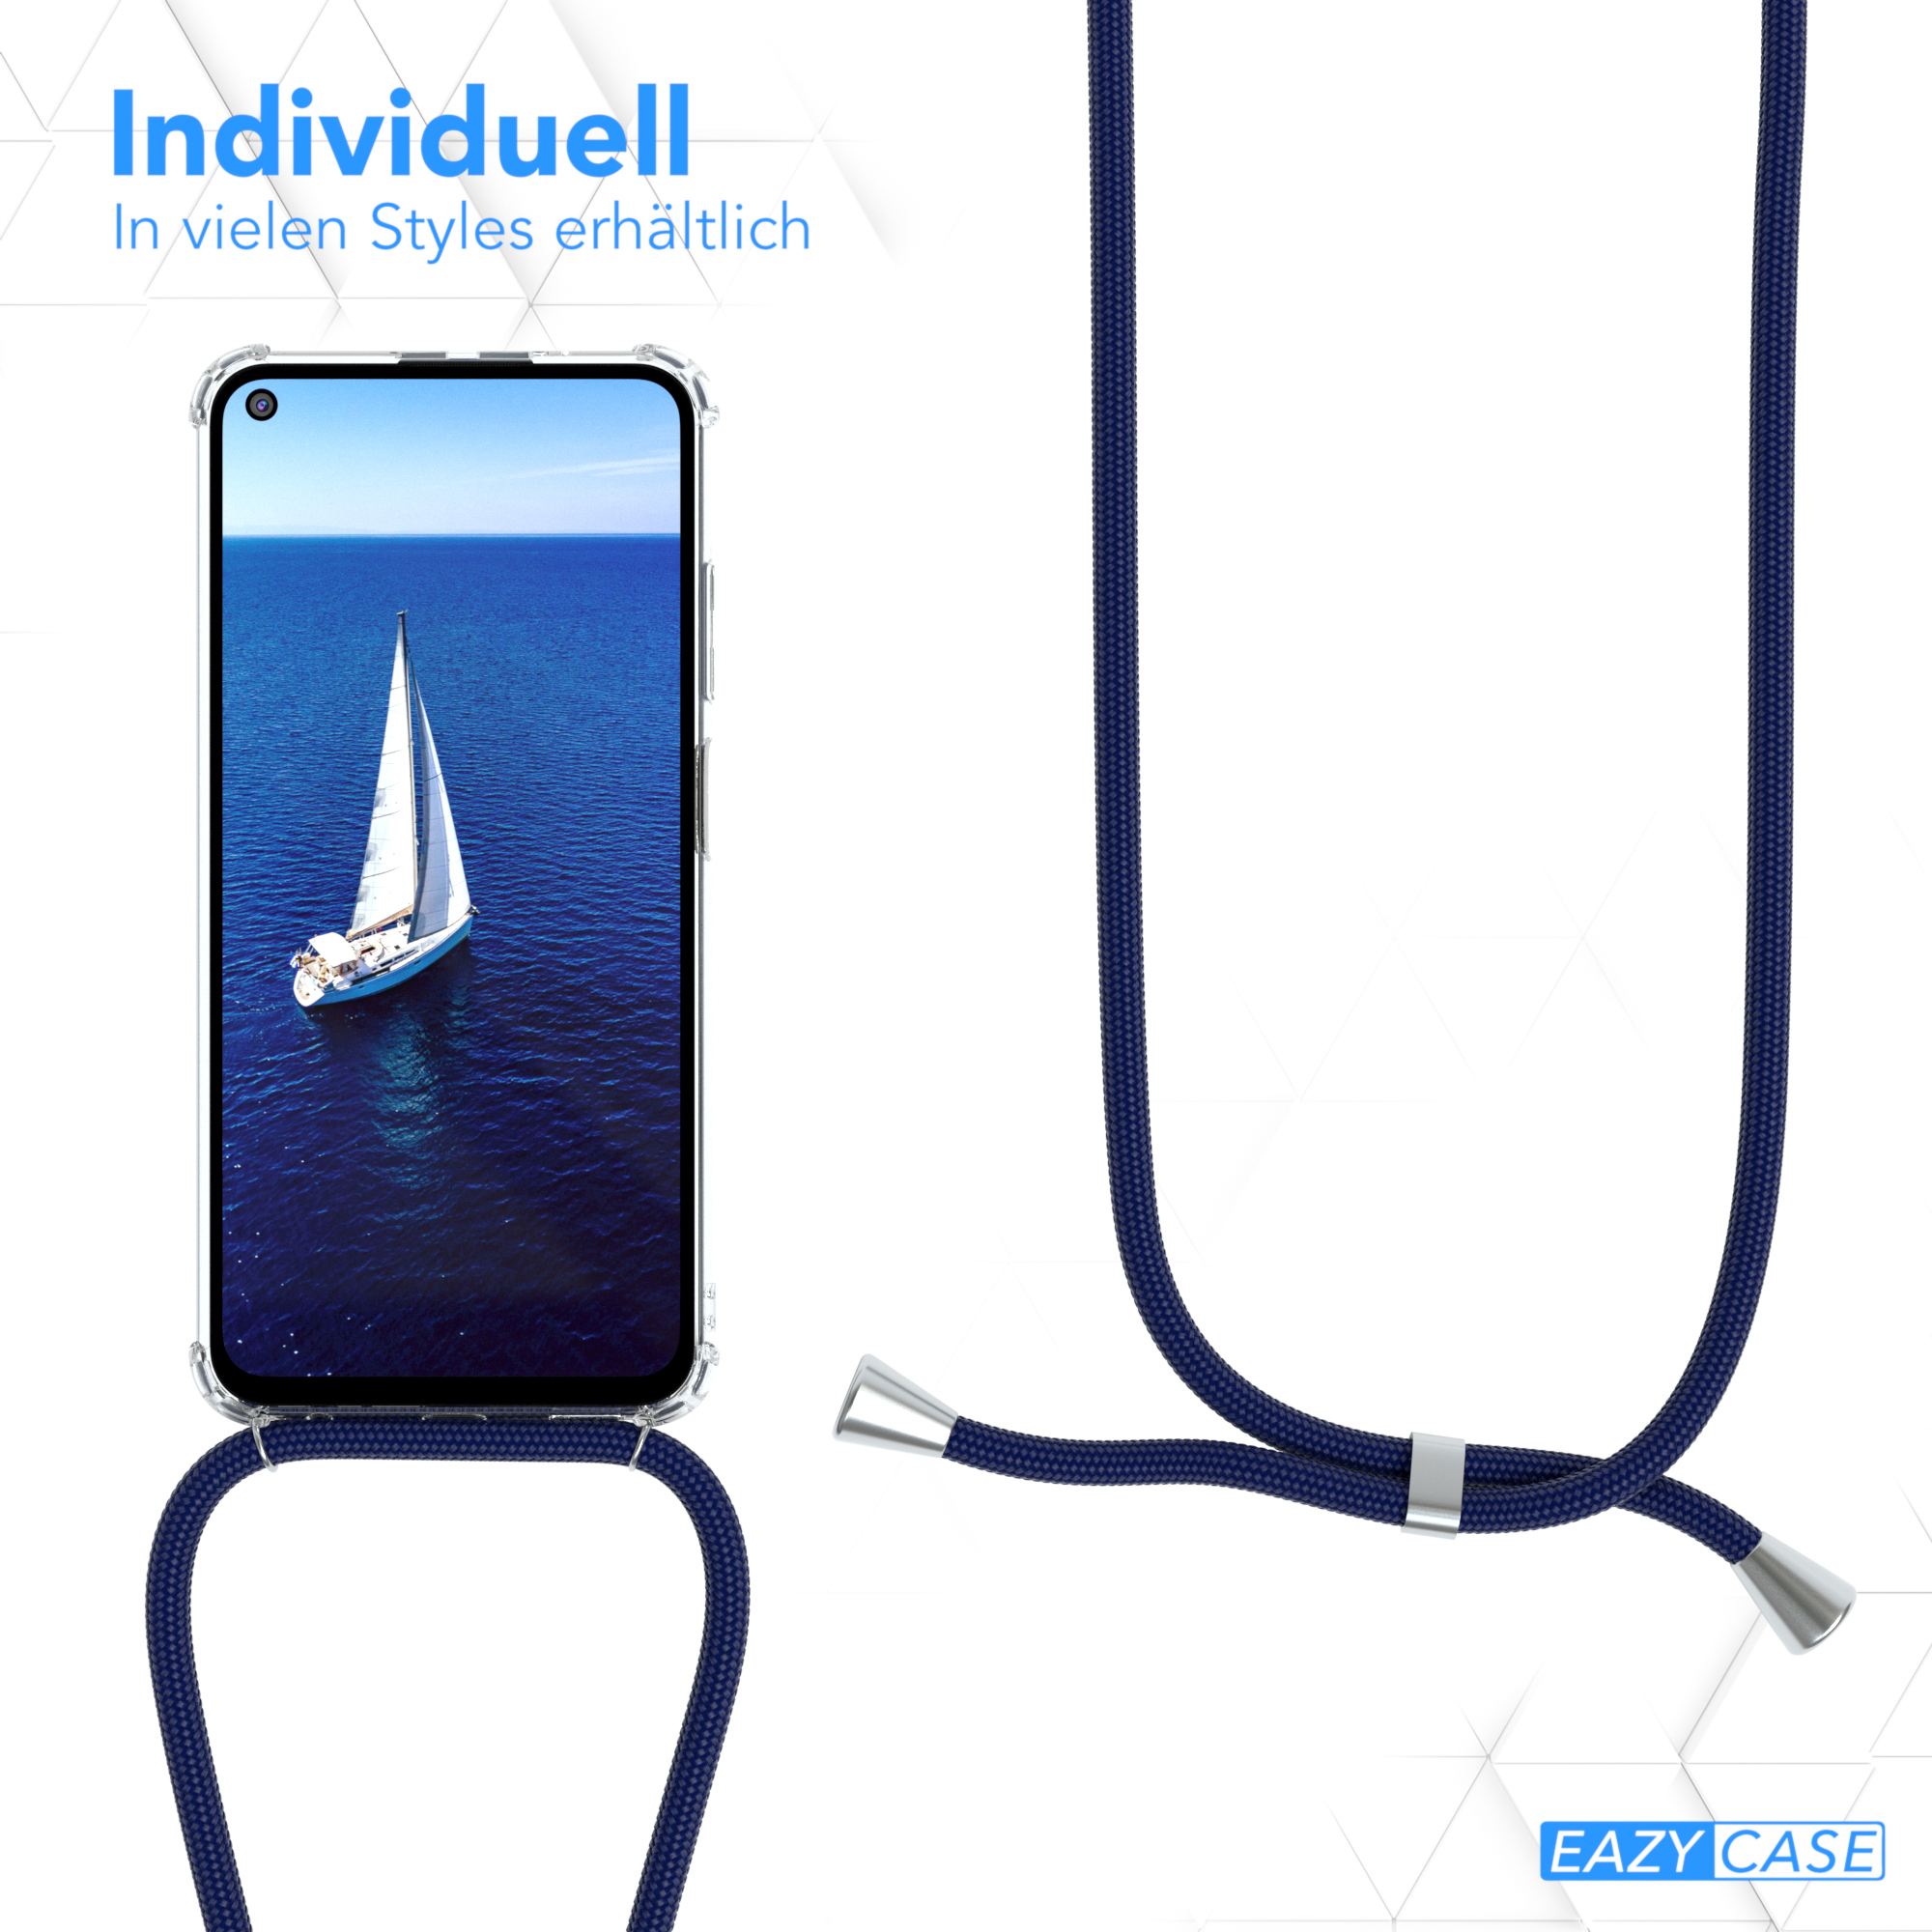 EAZY CASE Clear / Clips Umhängeband, Redmi Cover Note 9T, Umhängetasche, Blau mit Silber Xiaomi